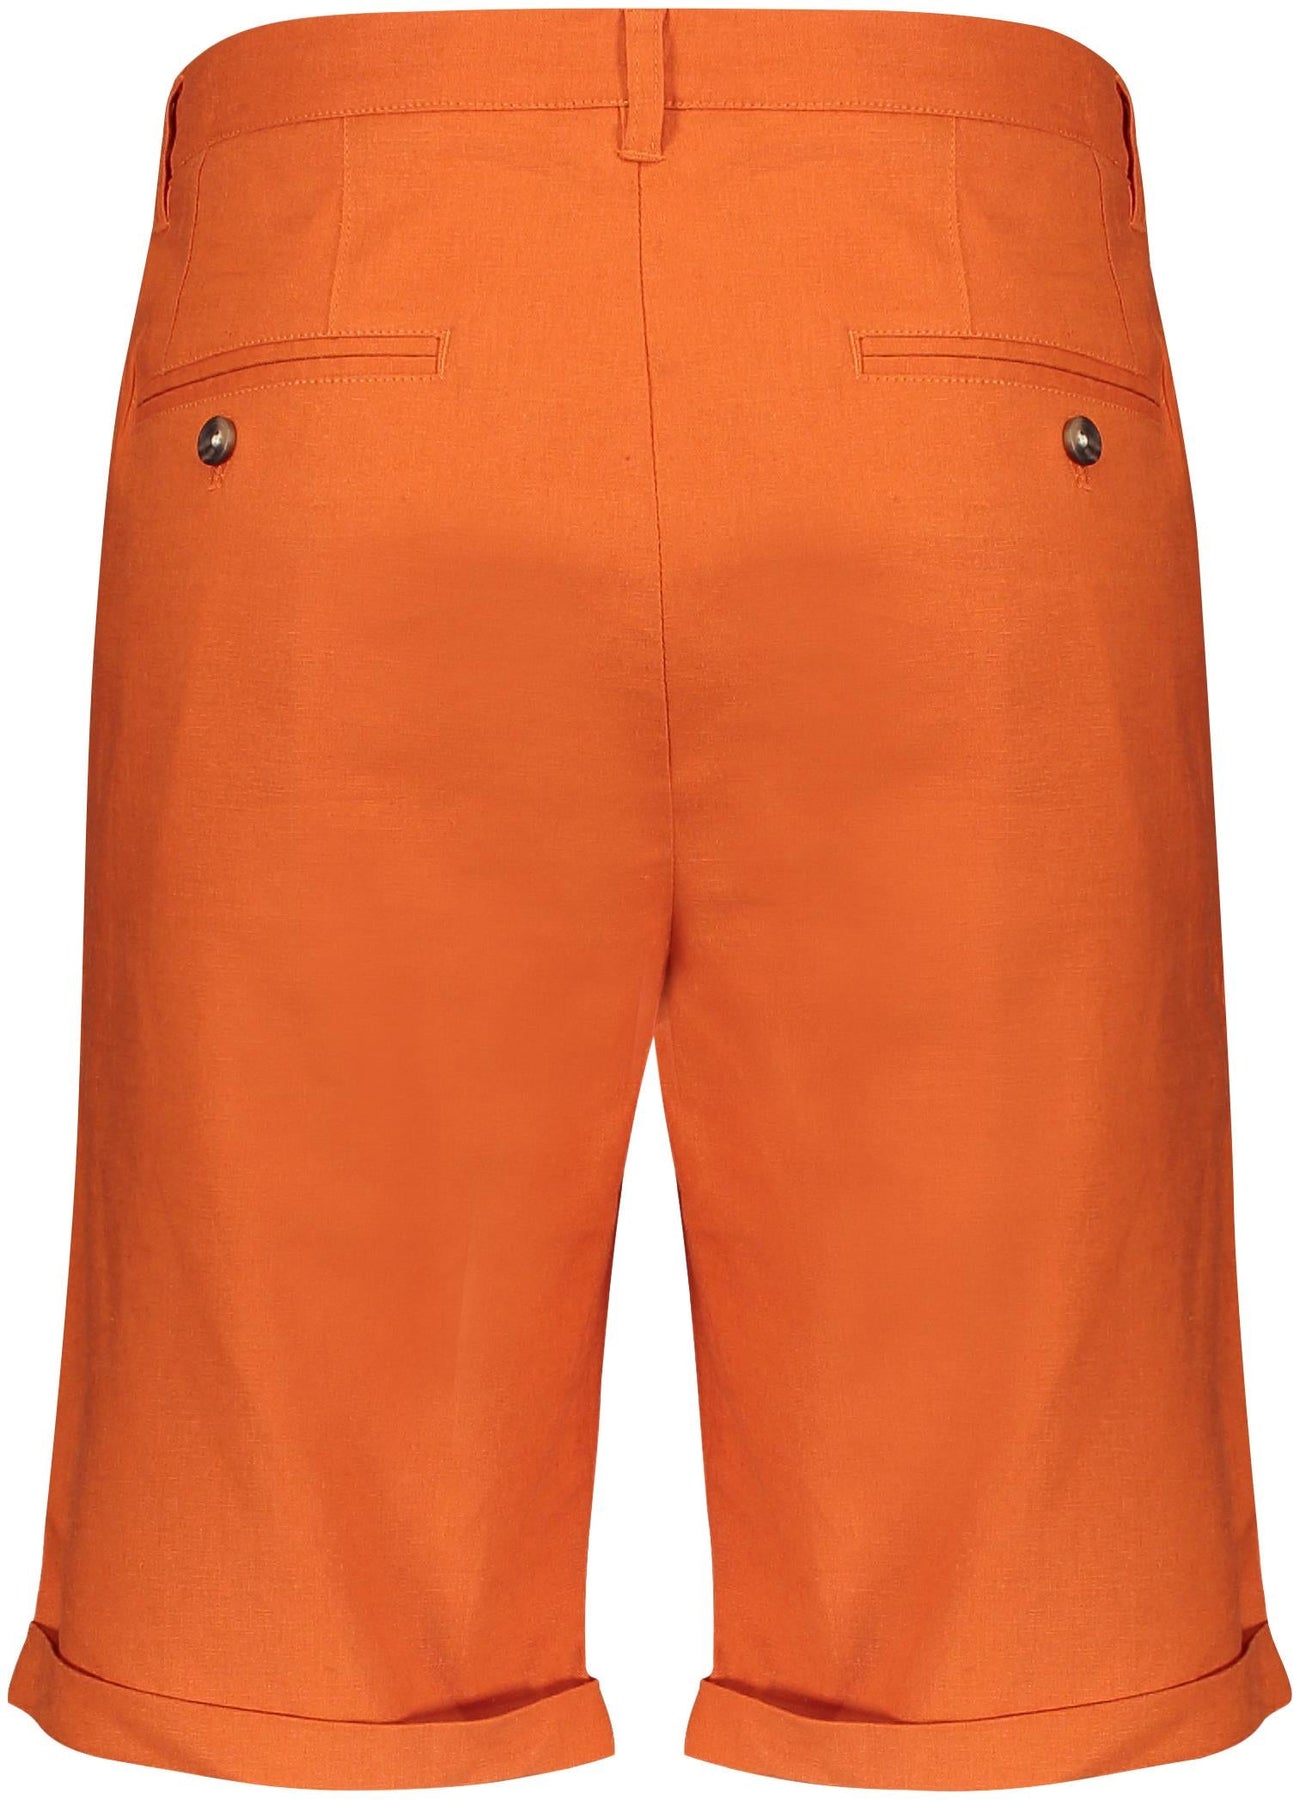 Felix Shorts - Burnt Orange